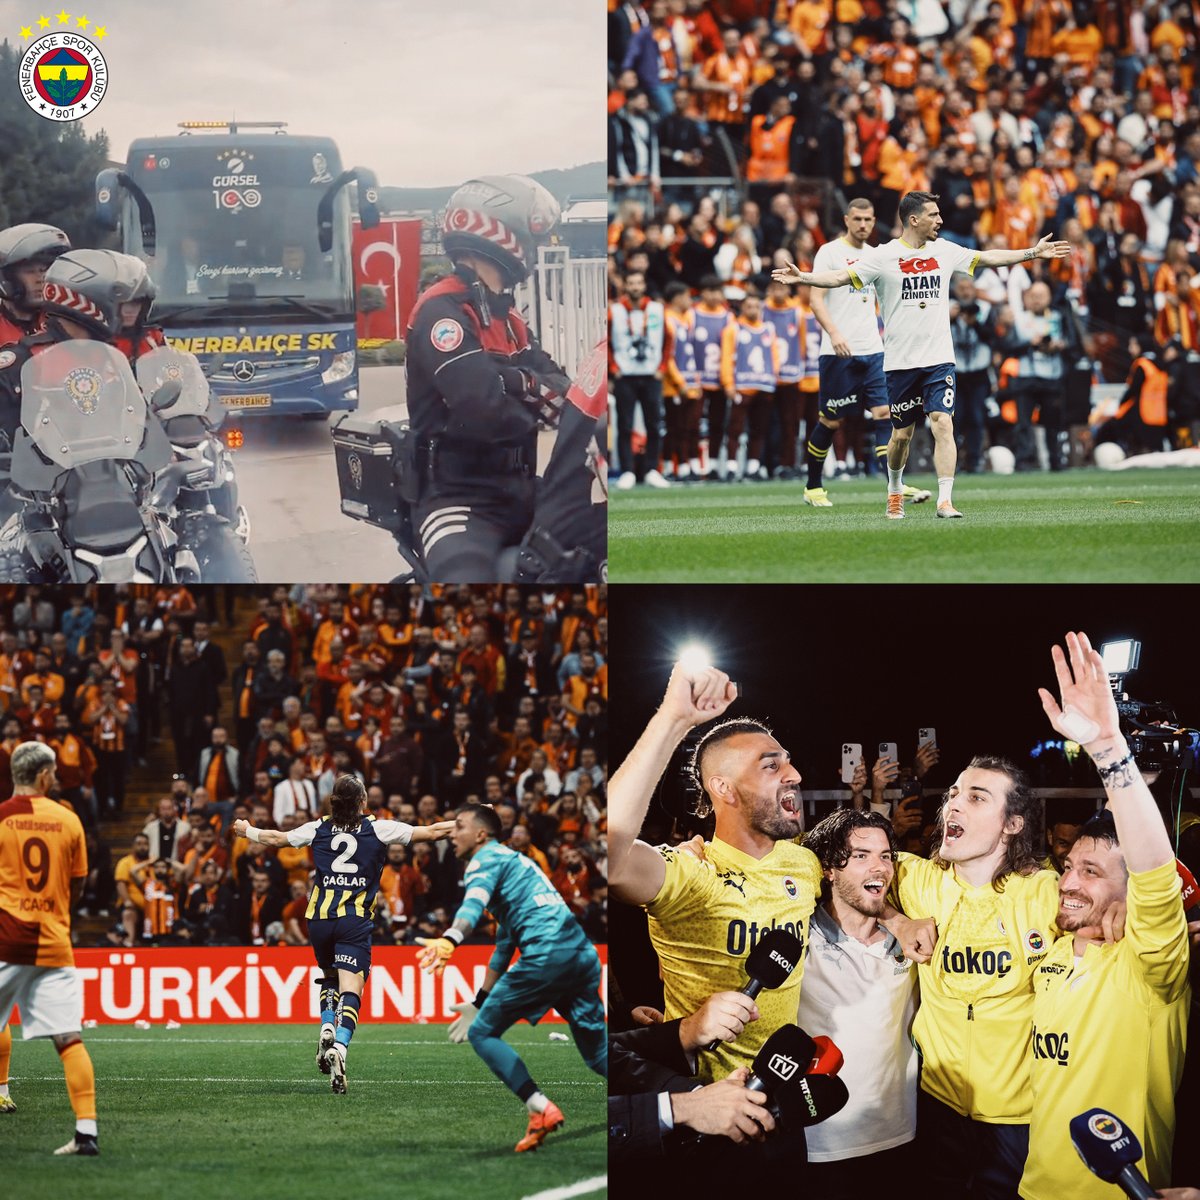 HERKESE VE HER ŞEYE RAĞMEN! #Fenerbahçe 💛💙